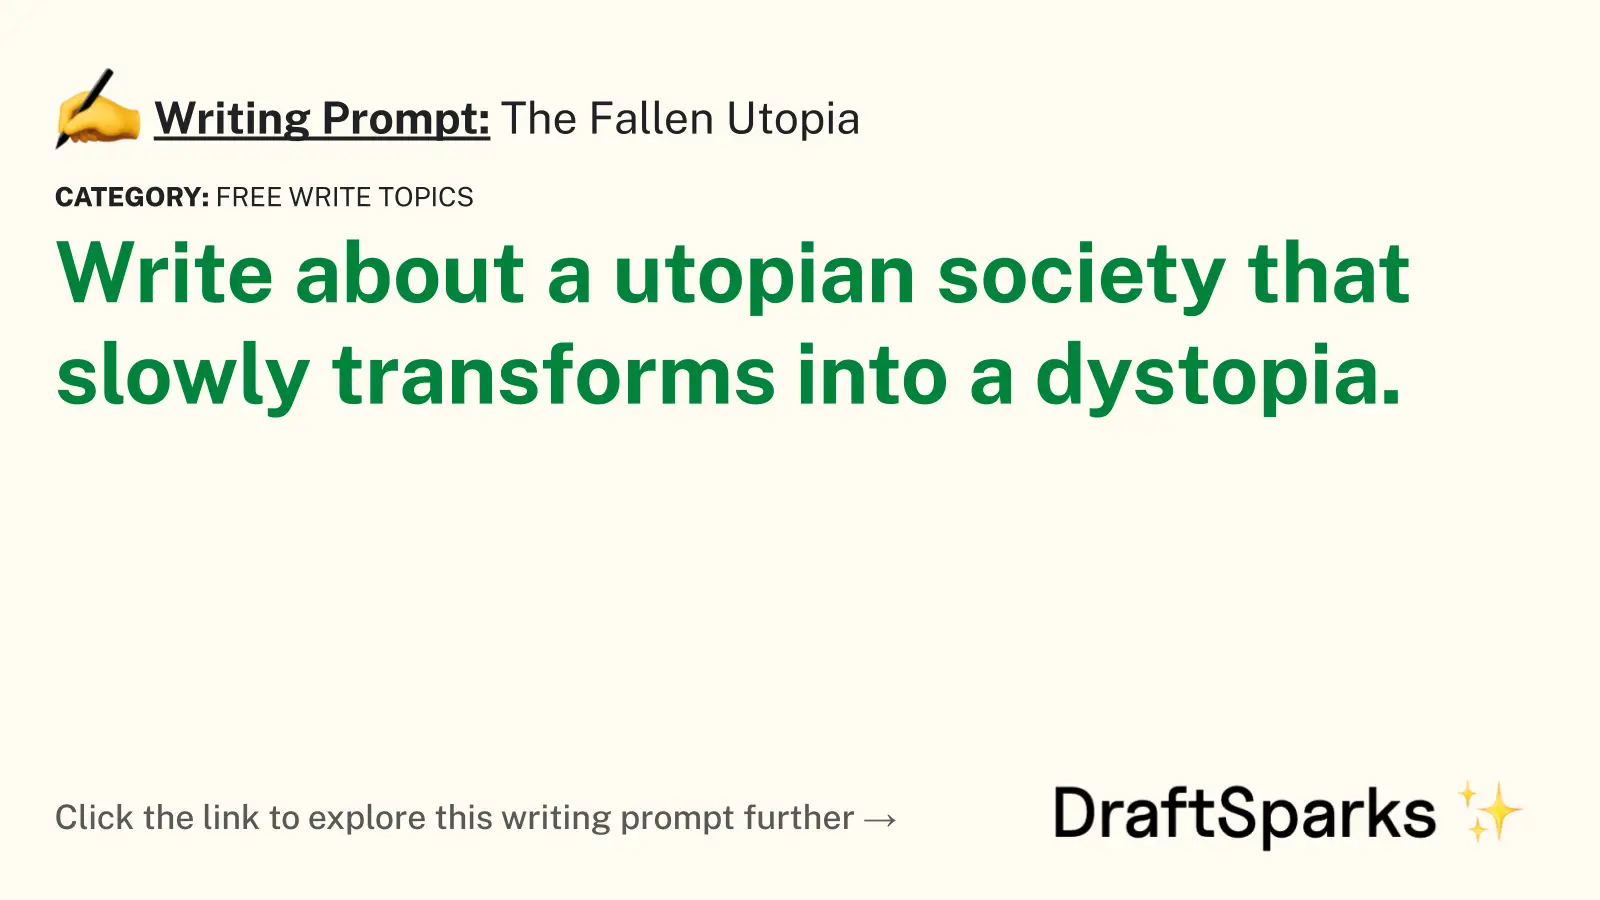 The Fallen Utopia